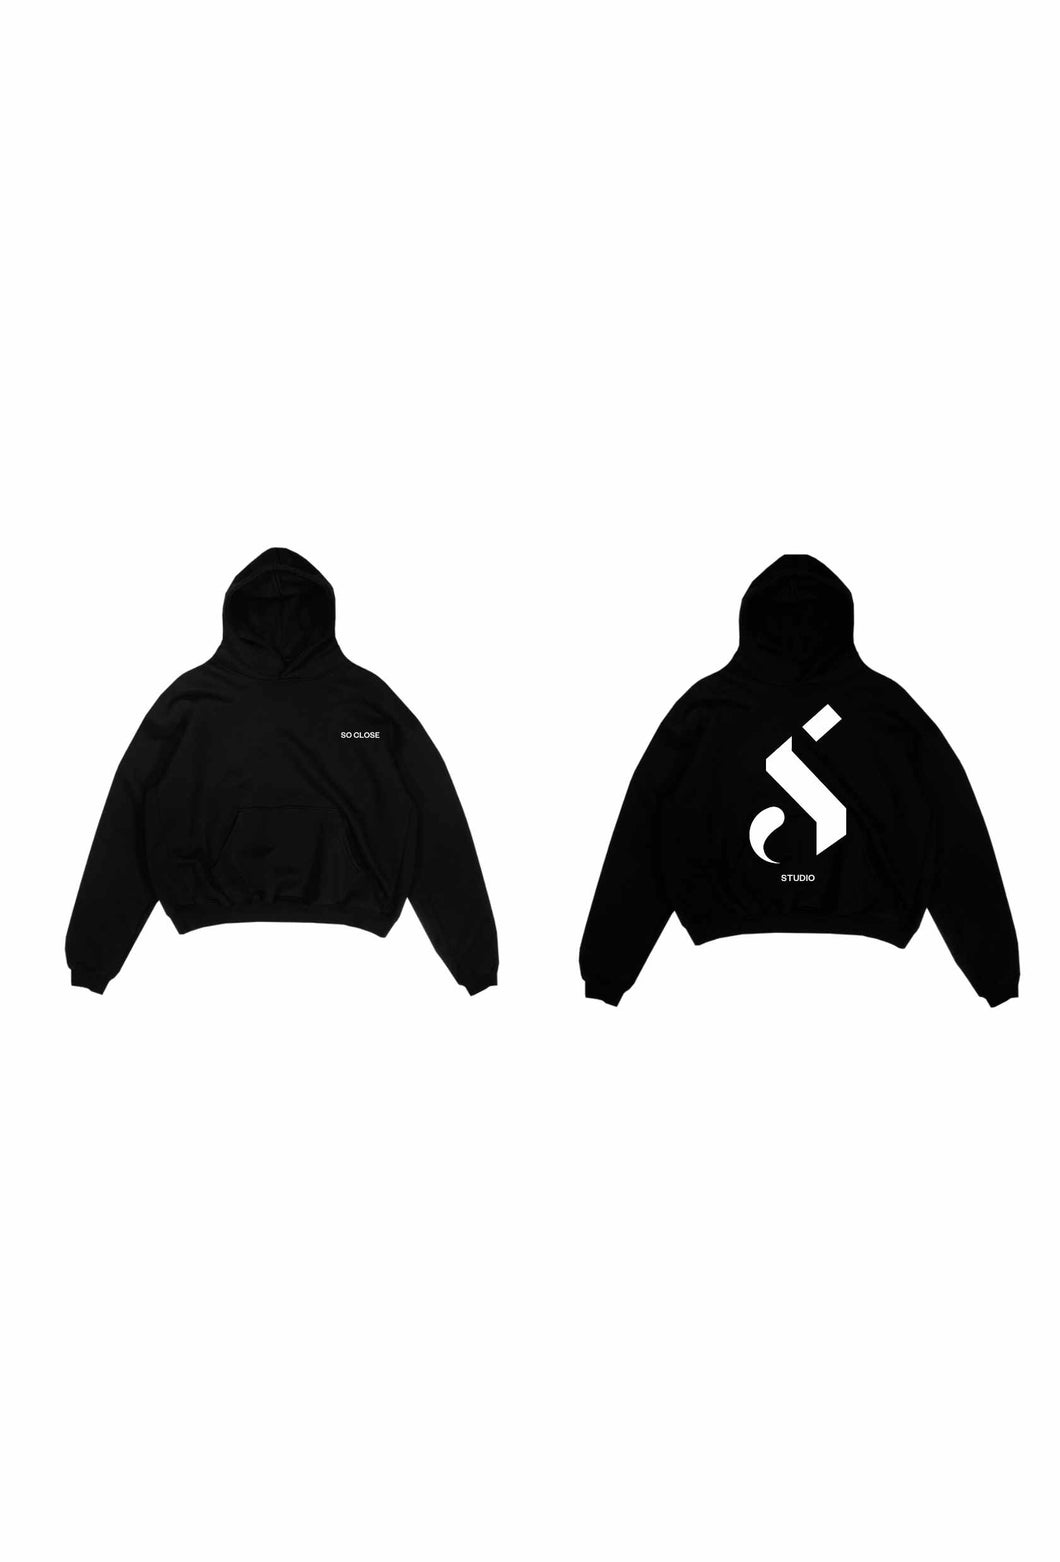 Heavyweight Black hoodie - 